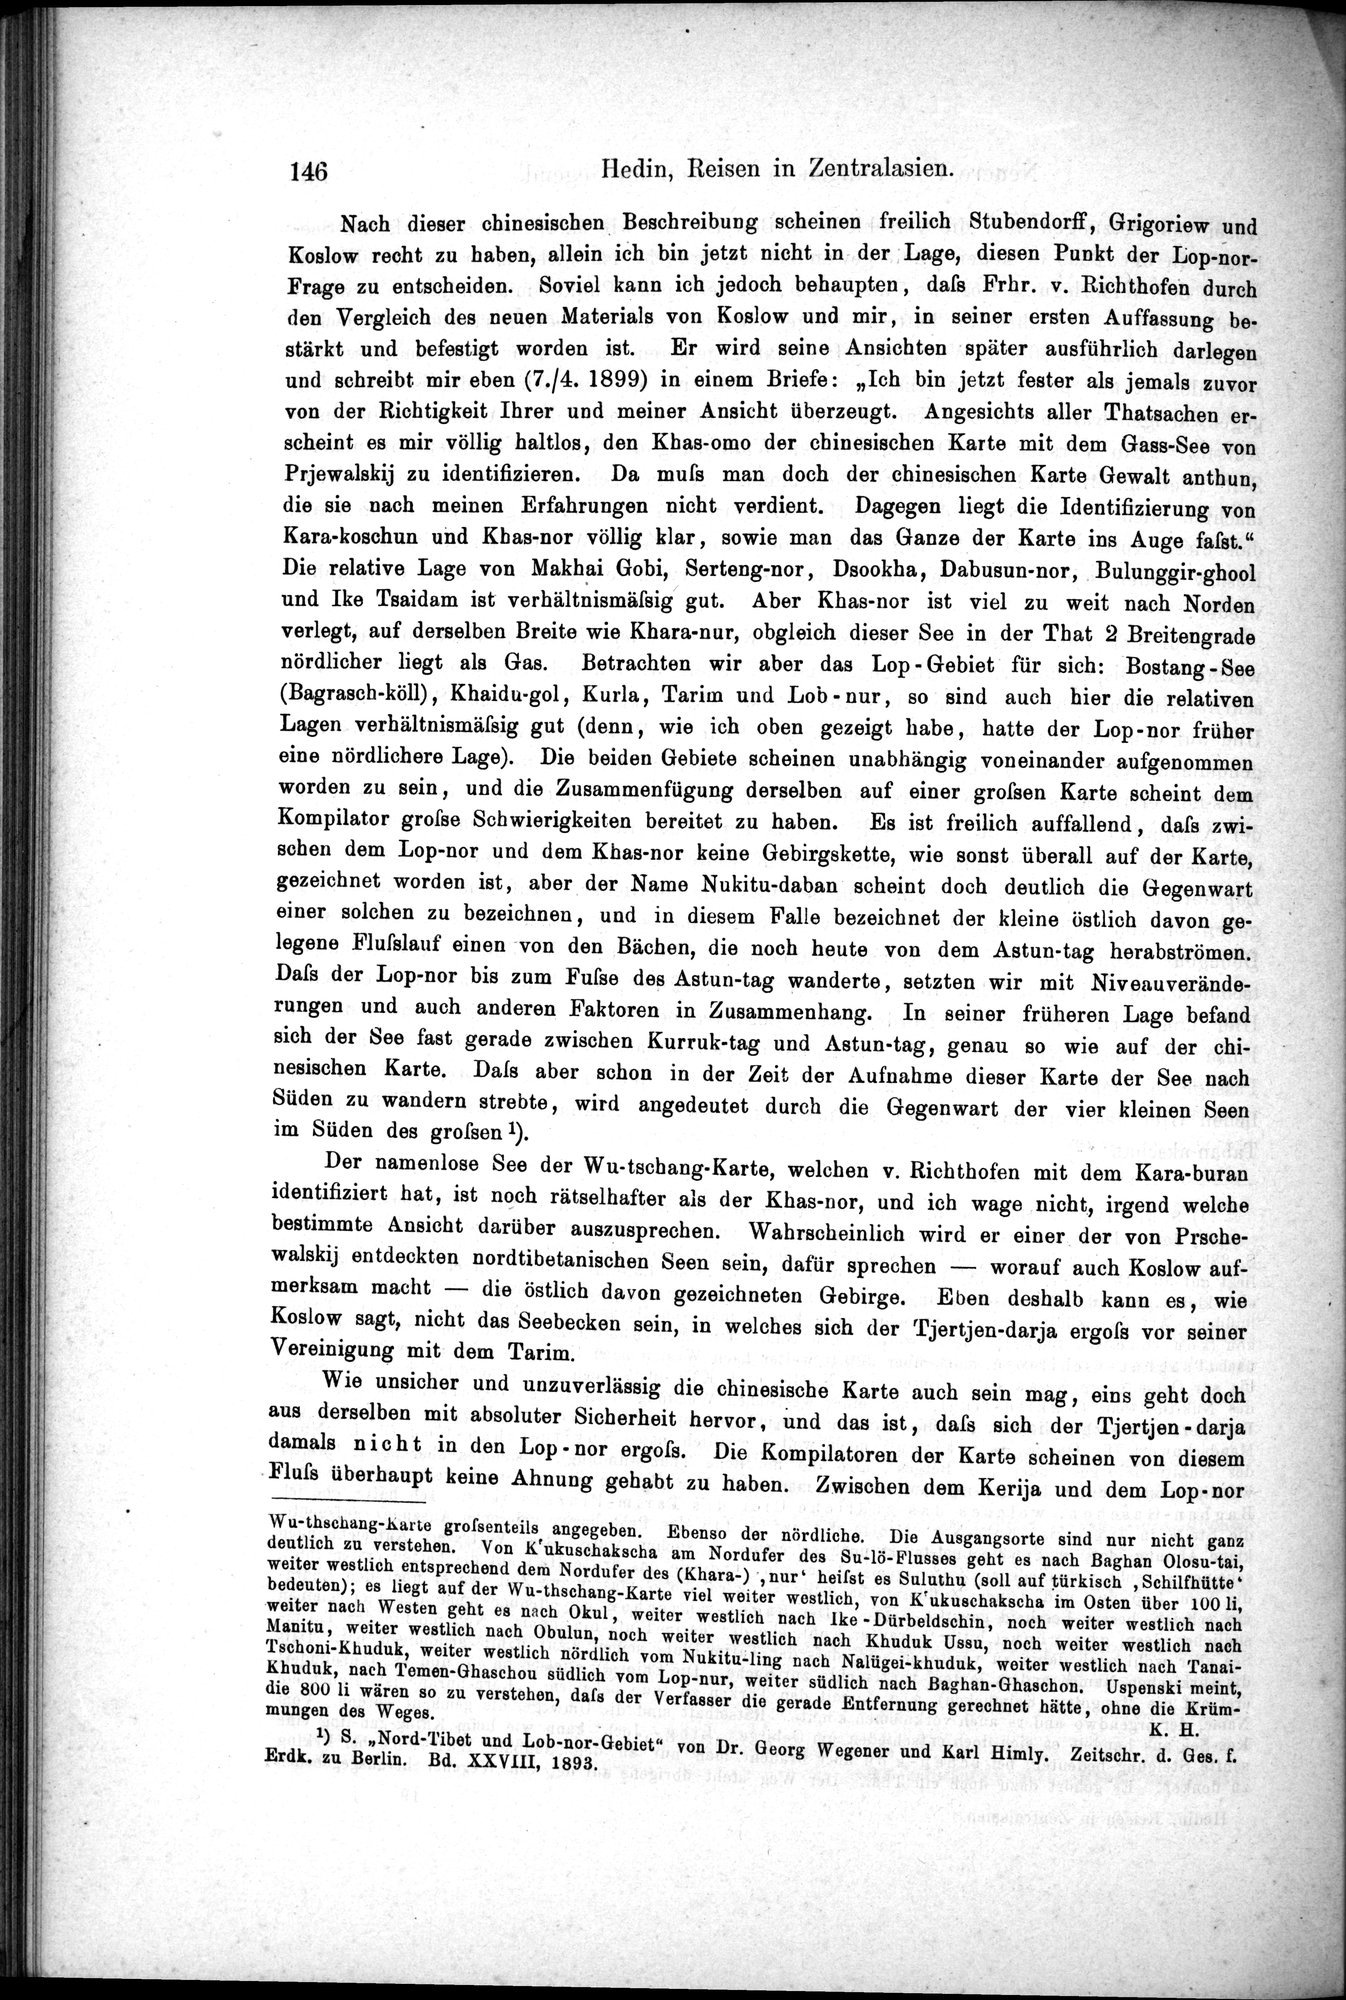 Die Geographische-Wissenschaftlichen Ergebnisse meiner Reisen in Zentralasien, 1894-1897 : vol.1 / Page 158 (Grayscale High Resolution Image)